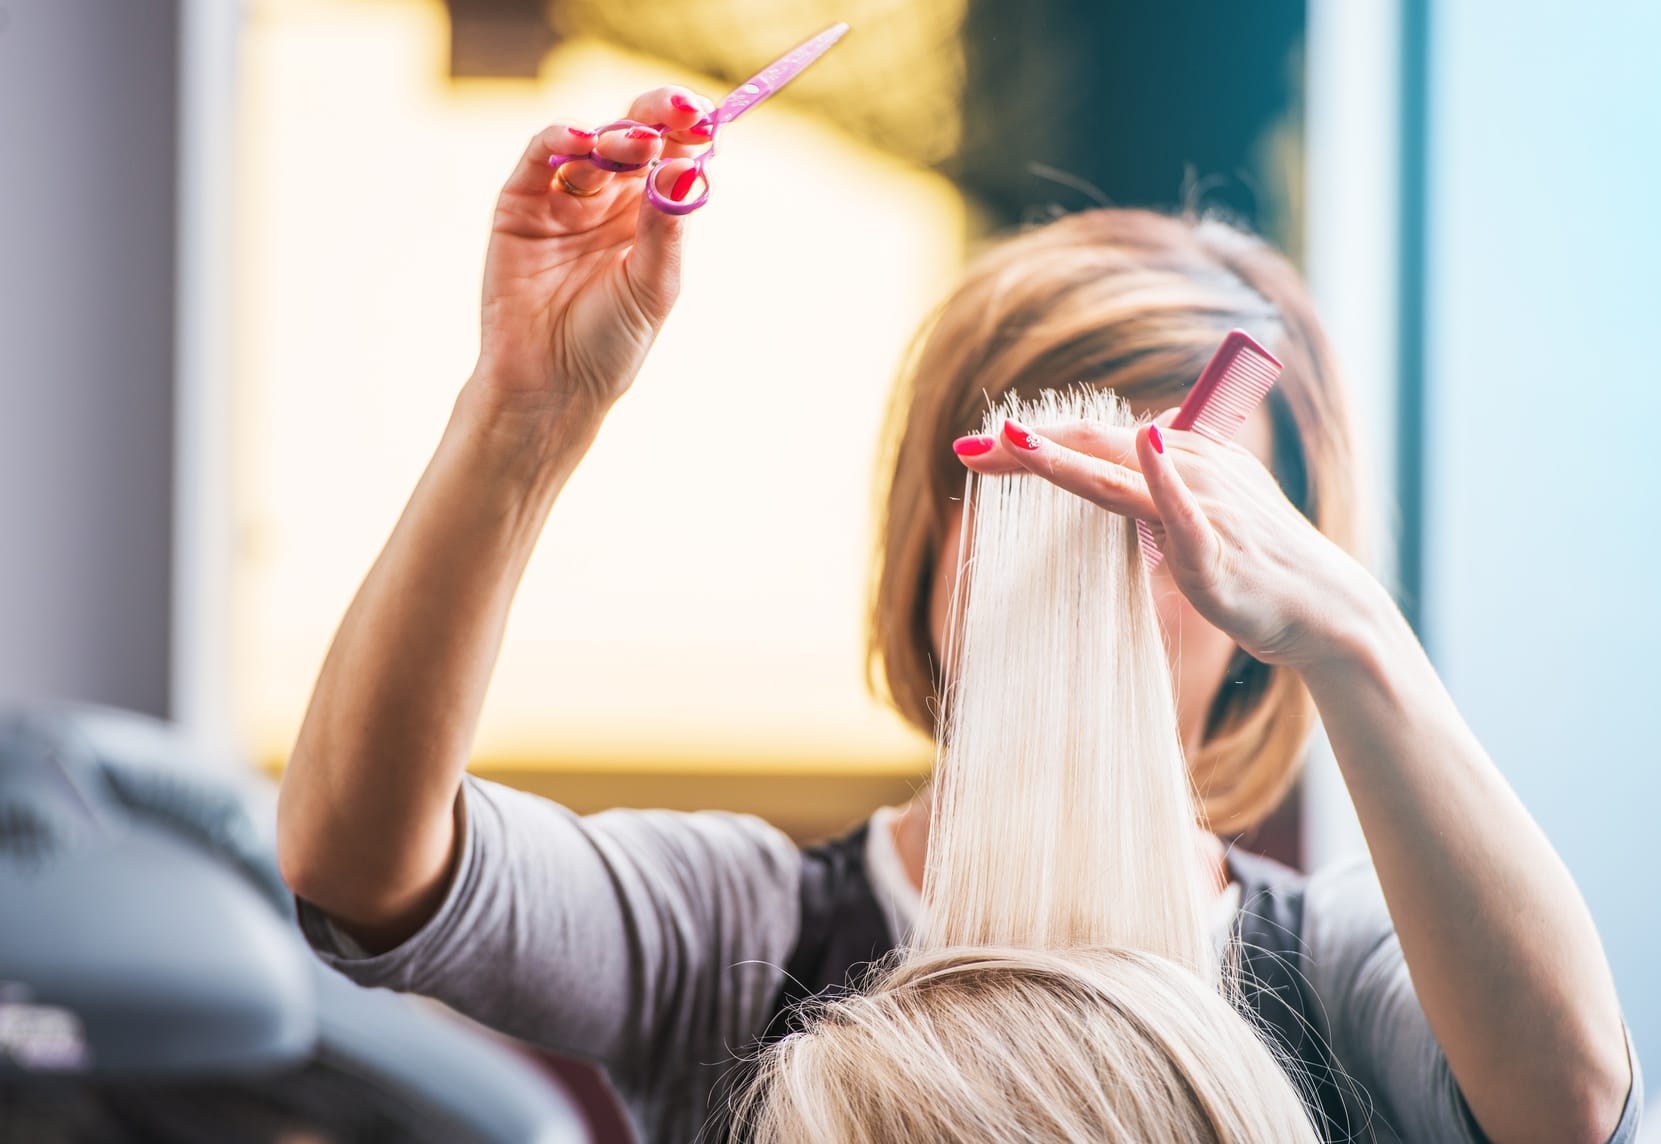 Wachsen Haare schneller wenn man sie regelmäßig schneidet?